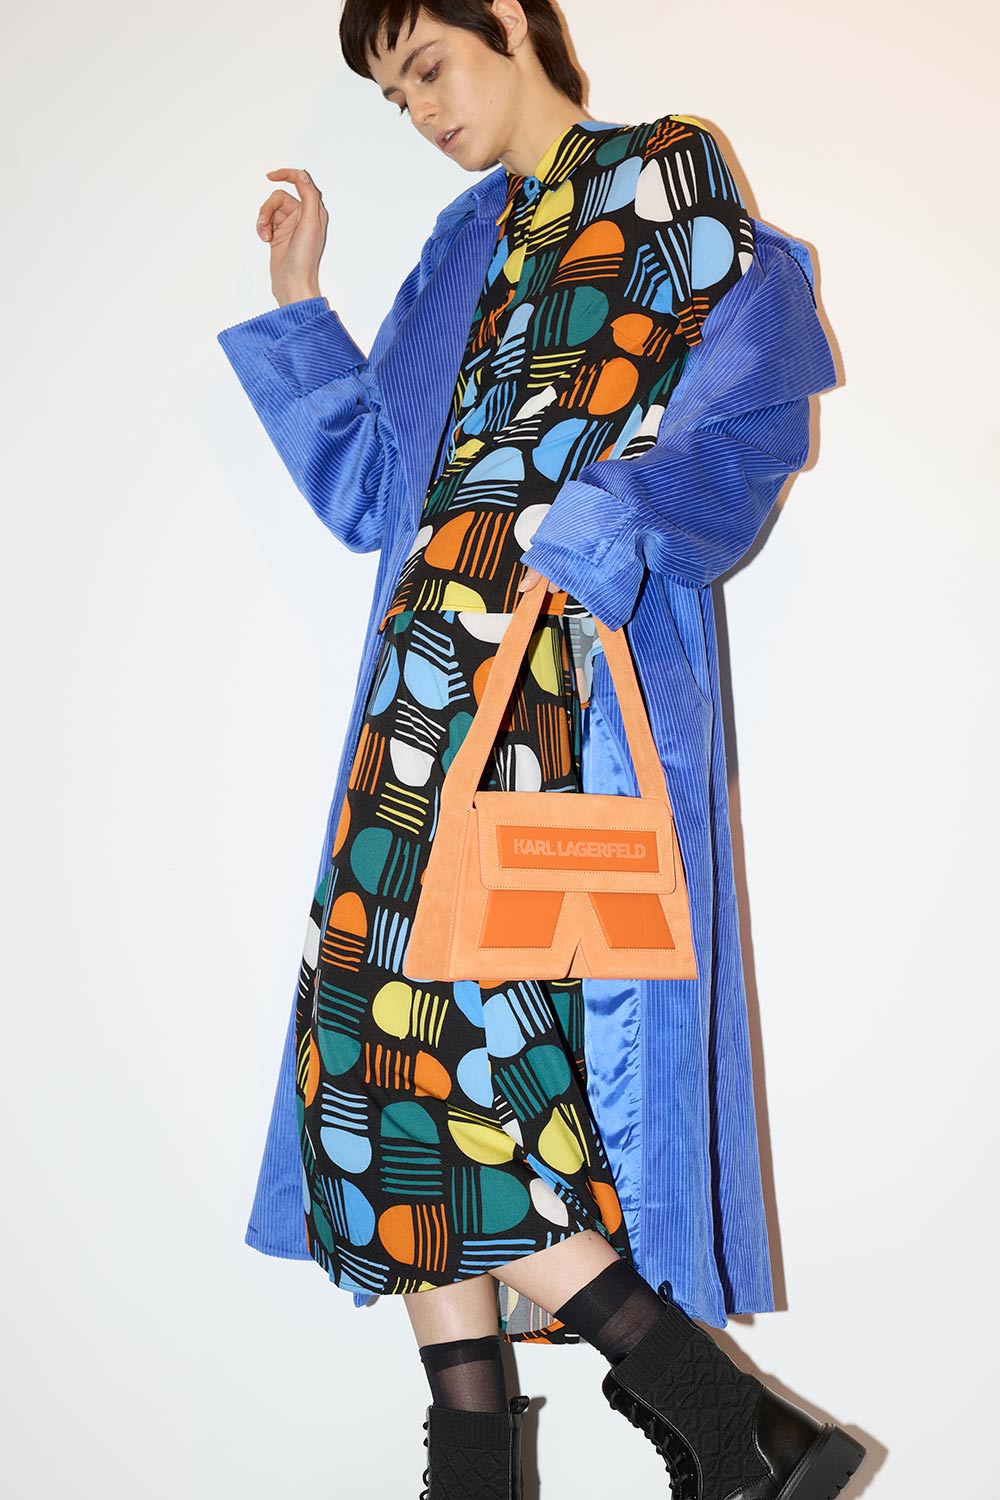 Mantel von COS. Bluse & Rock von TRAFFIC PEOPLE. Stiefel von ASOS. Tasche von KARL LAGERFELD.
Model: Natalia Napieralska